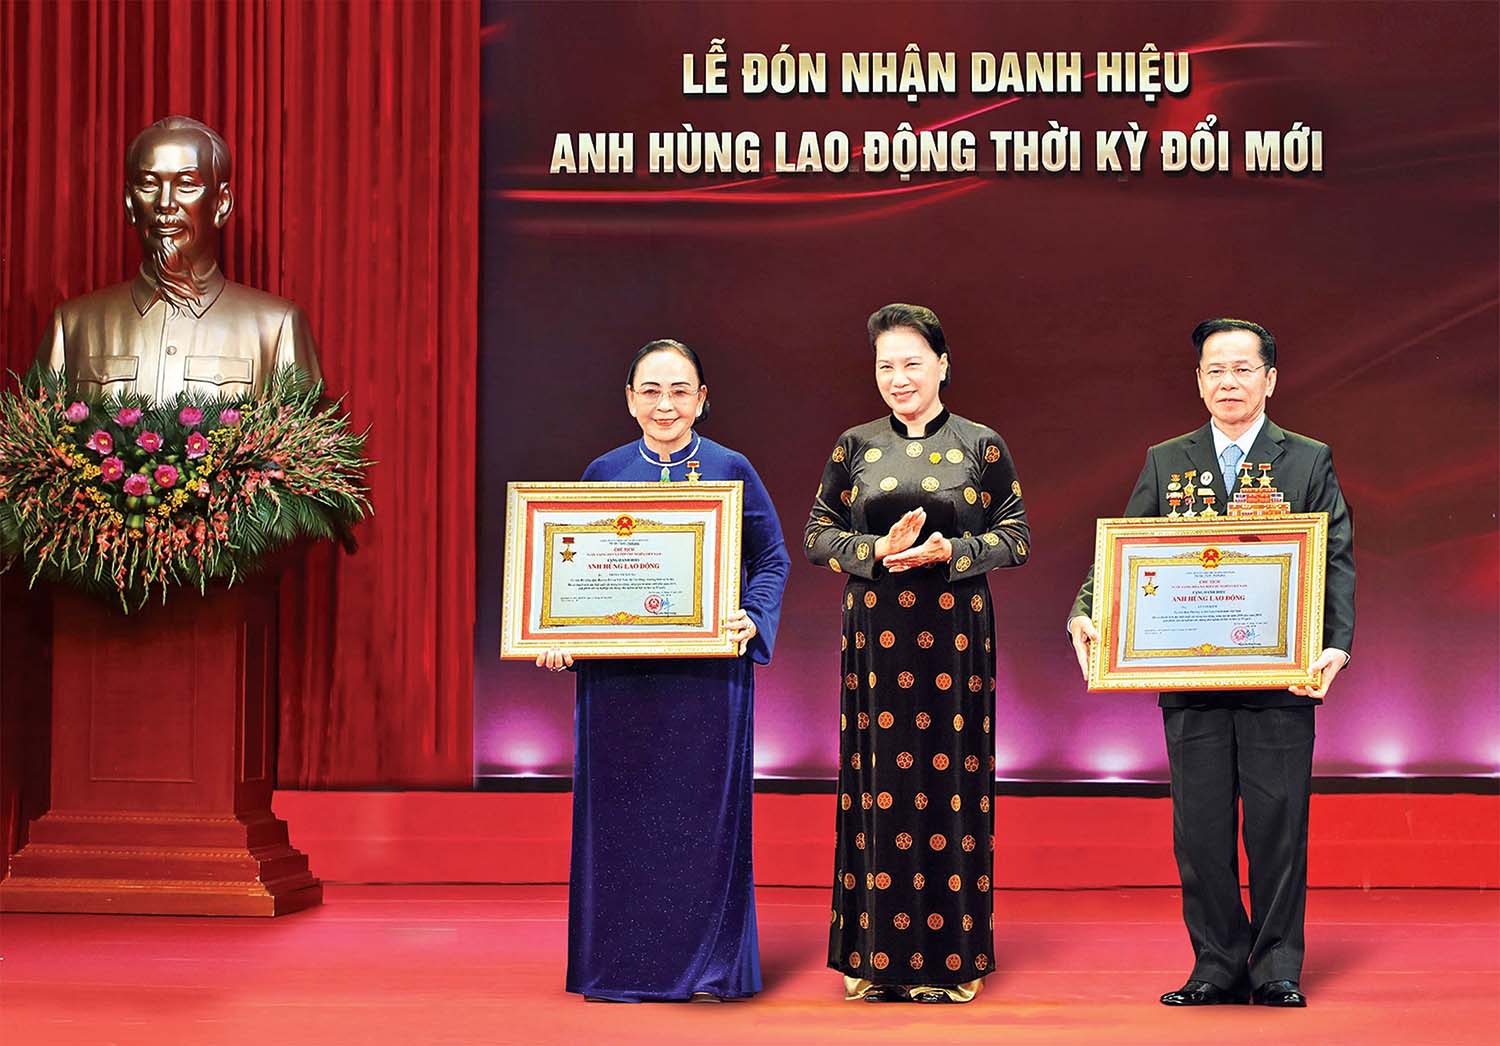 Nguyên Chủ tịch Quốc hội Nguyễn Thị Kim Ngân trao danh hiệu Anh hùng Lao động thời kỳ đổi mới cho ông Lê Văn Kiểm và bà Trần Cẩm Nhung